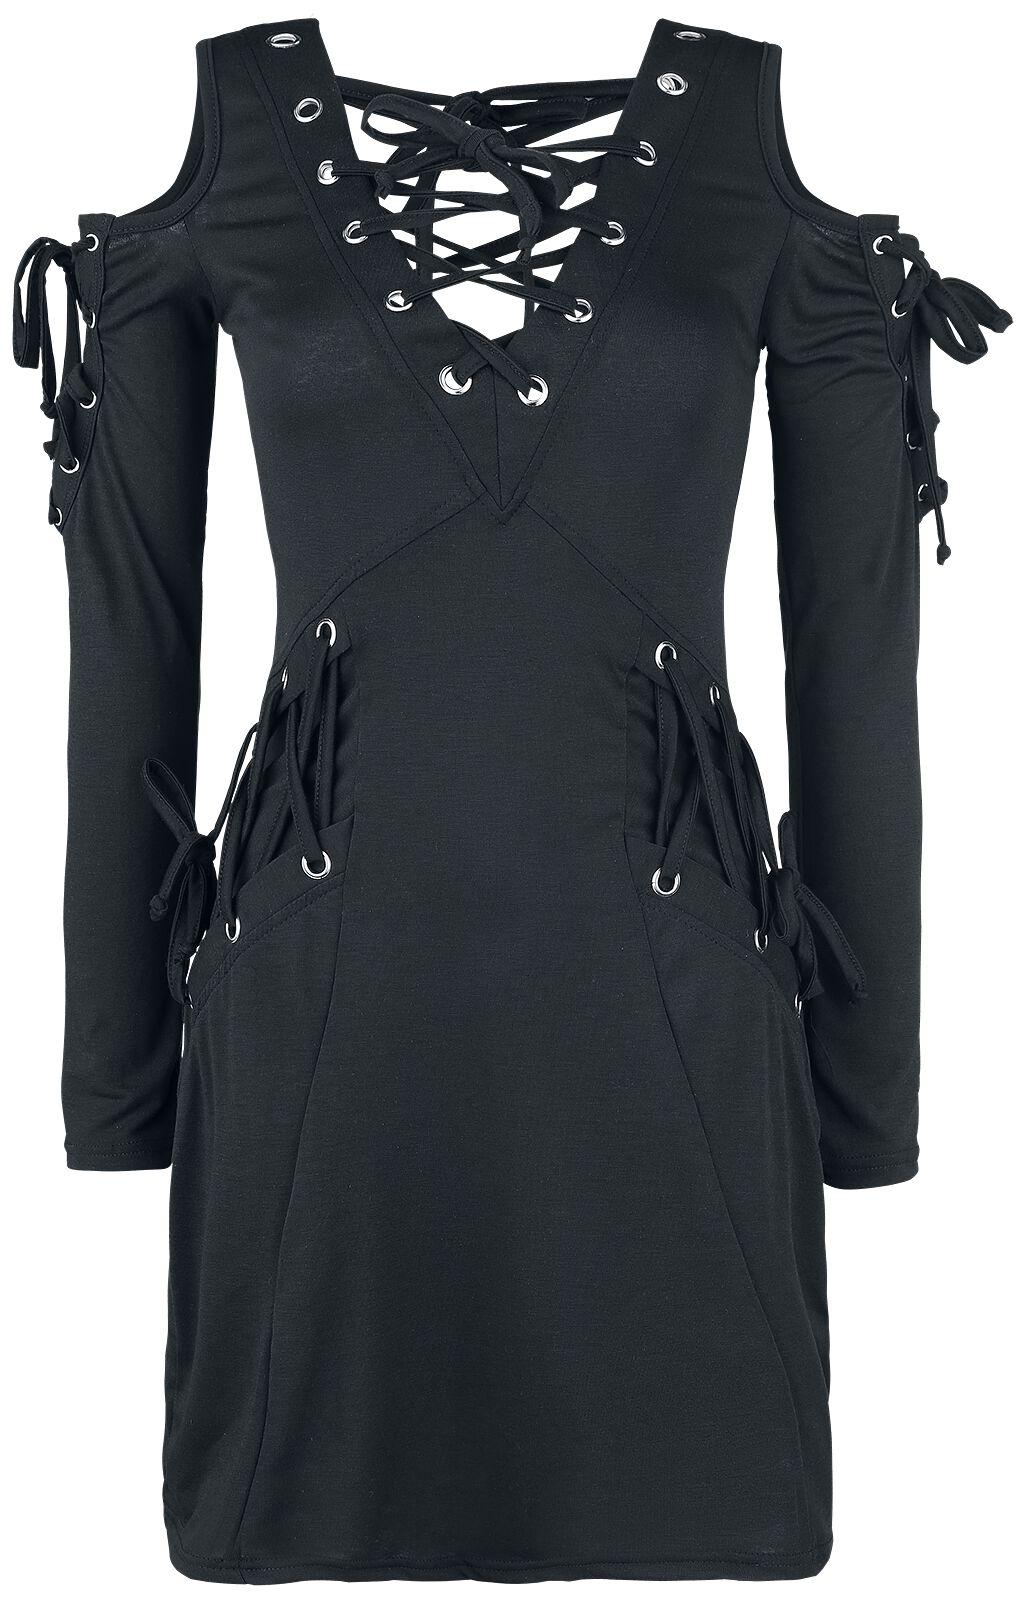 Innocent - Gothic Kurzes Kleid - Crave Top - S bis XXL - für Damen - Größe L - schwarz